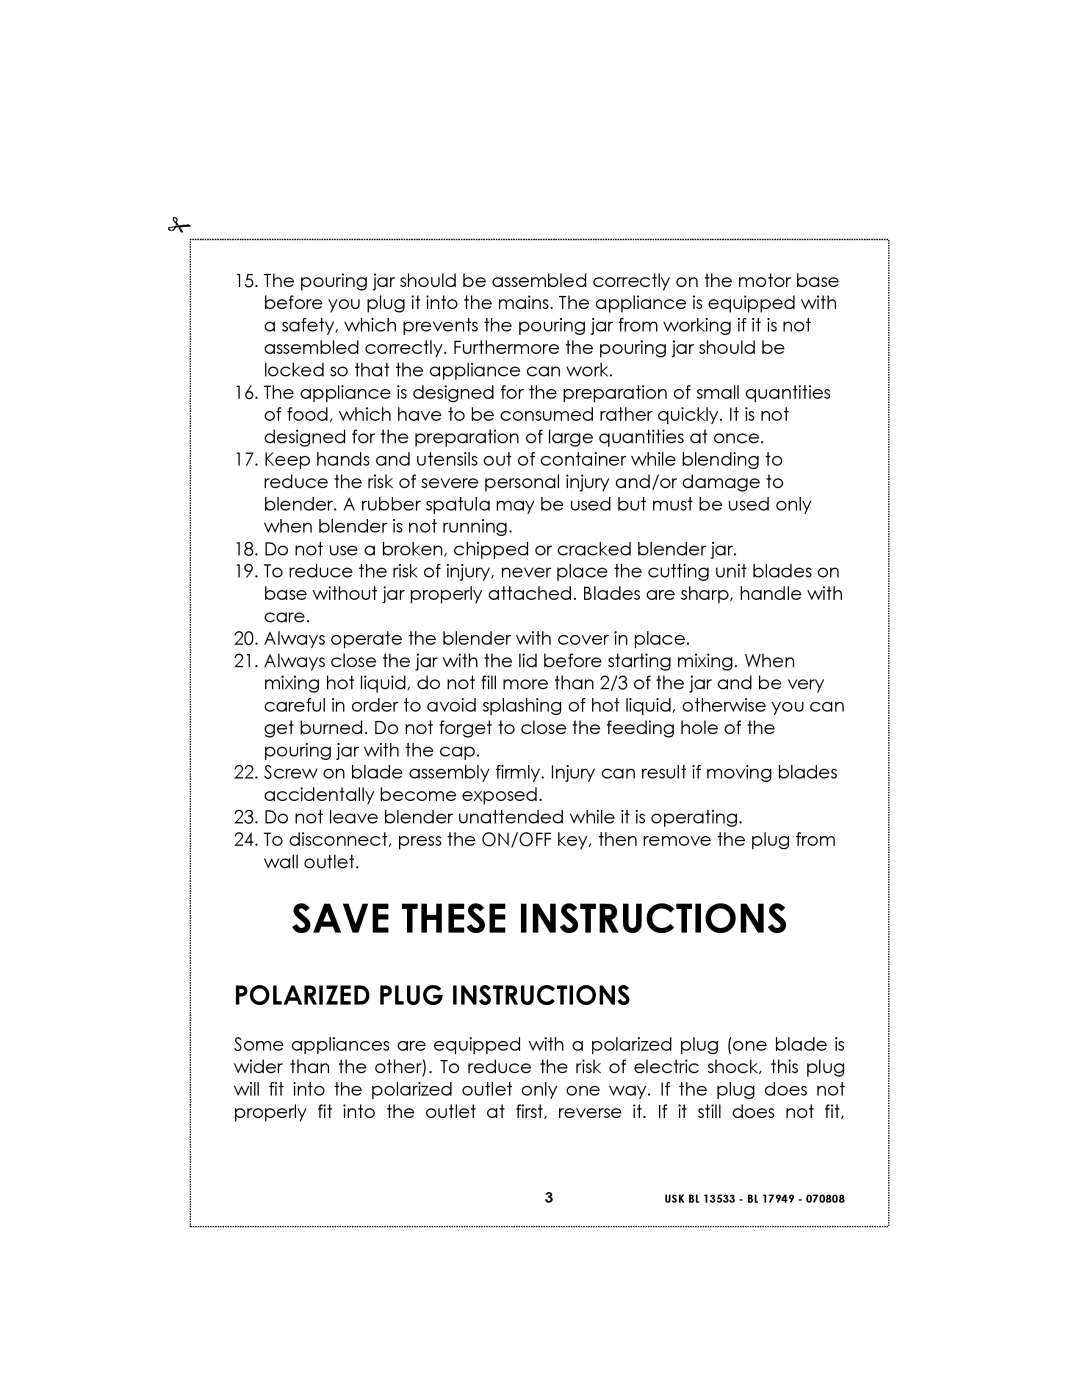 Kalorik USK BL 17949 BL 1, USK BL 13533 BL 6 manual Save These Instructions, Polarized Plug Instructions 